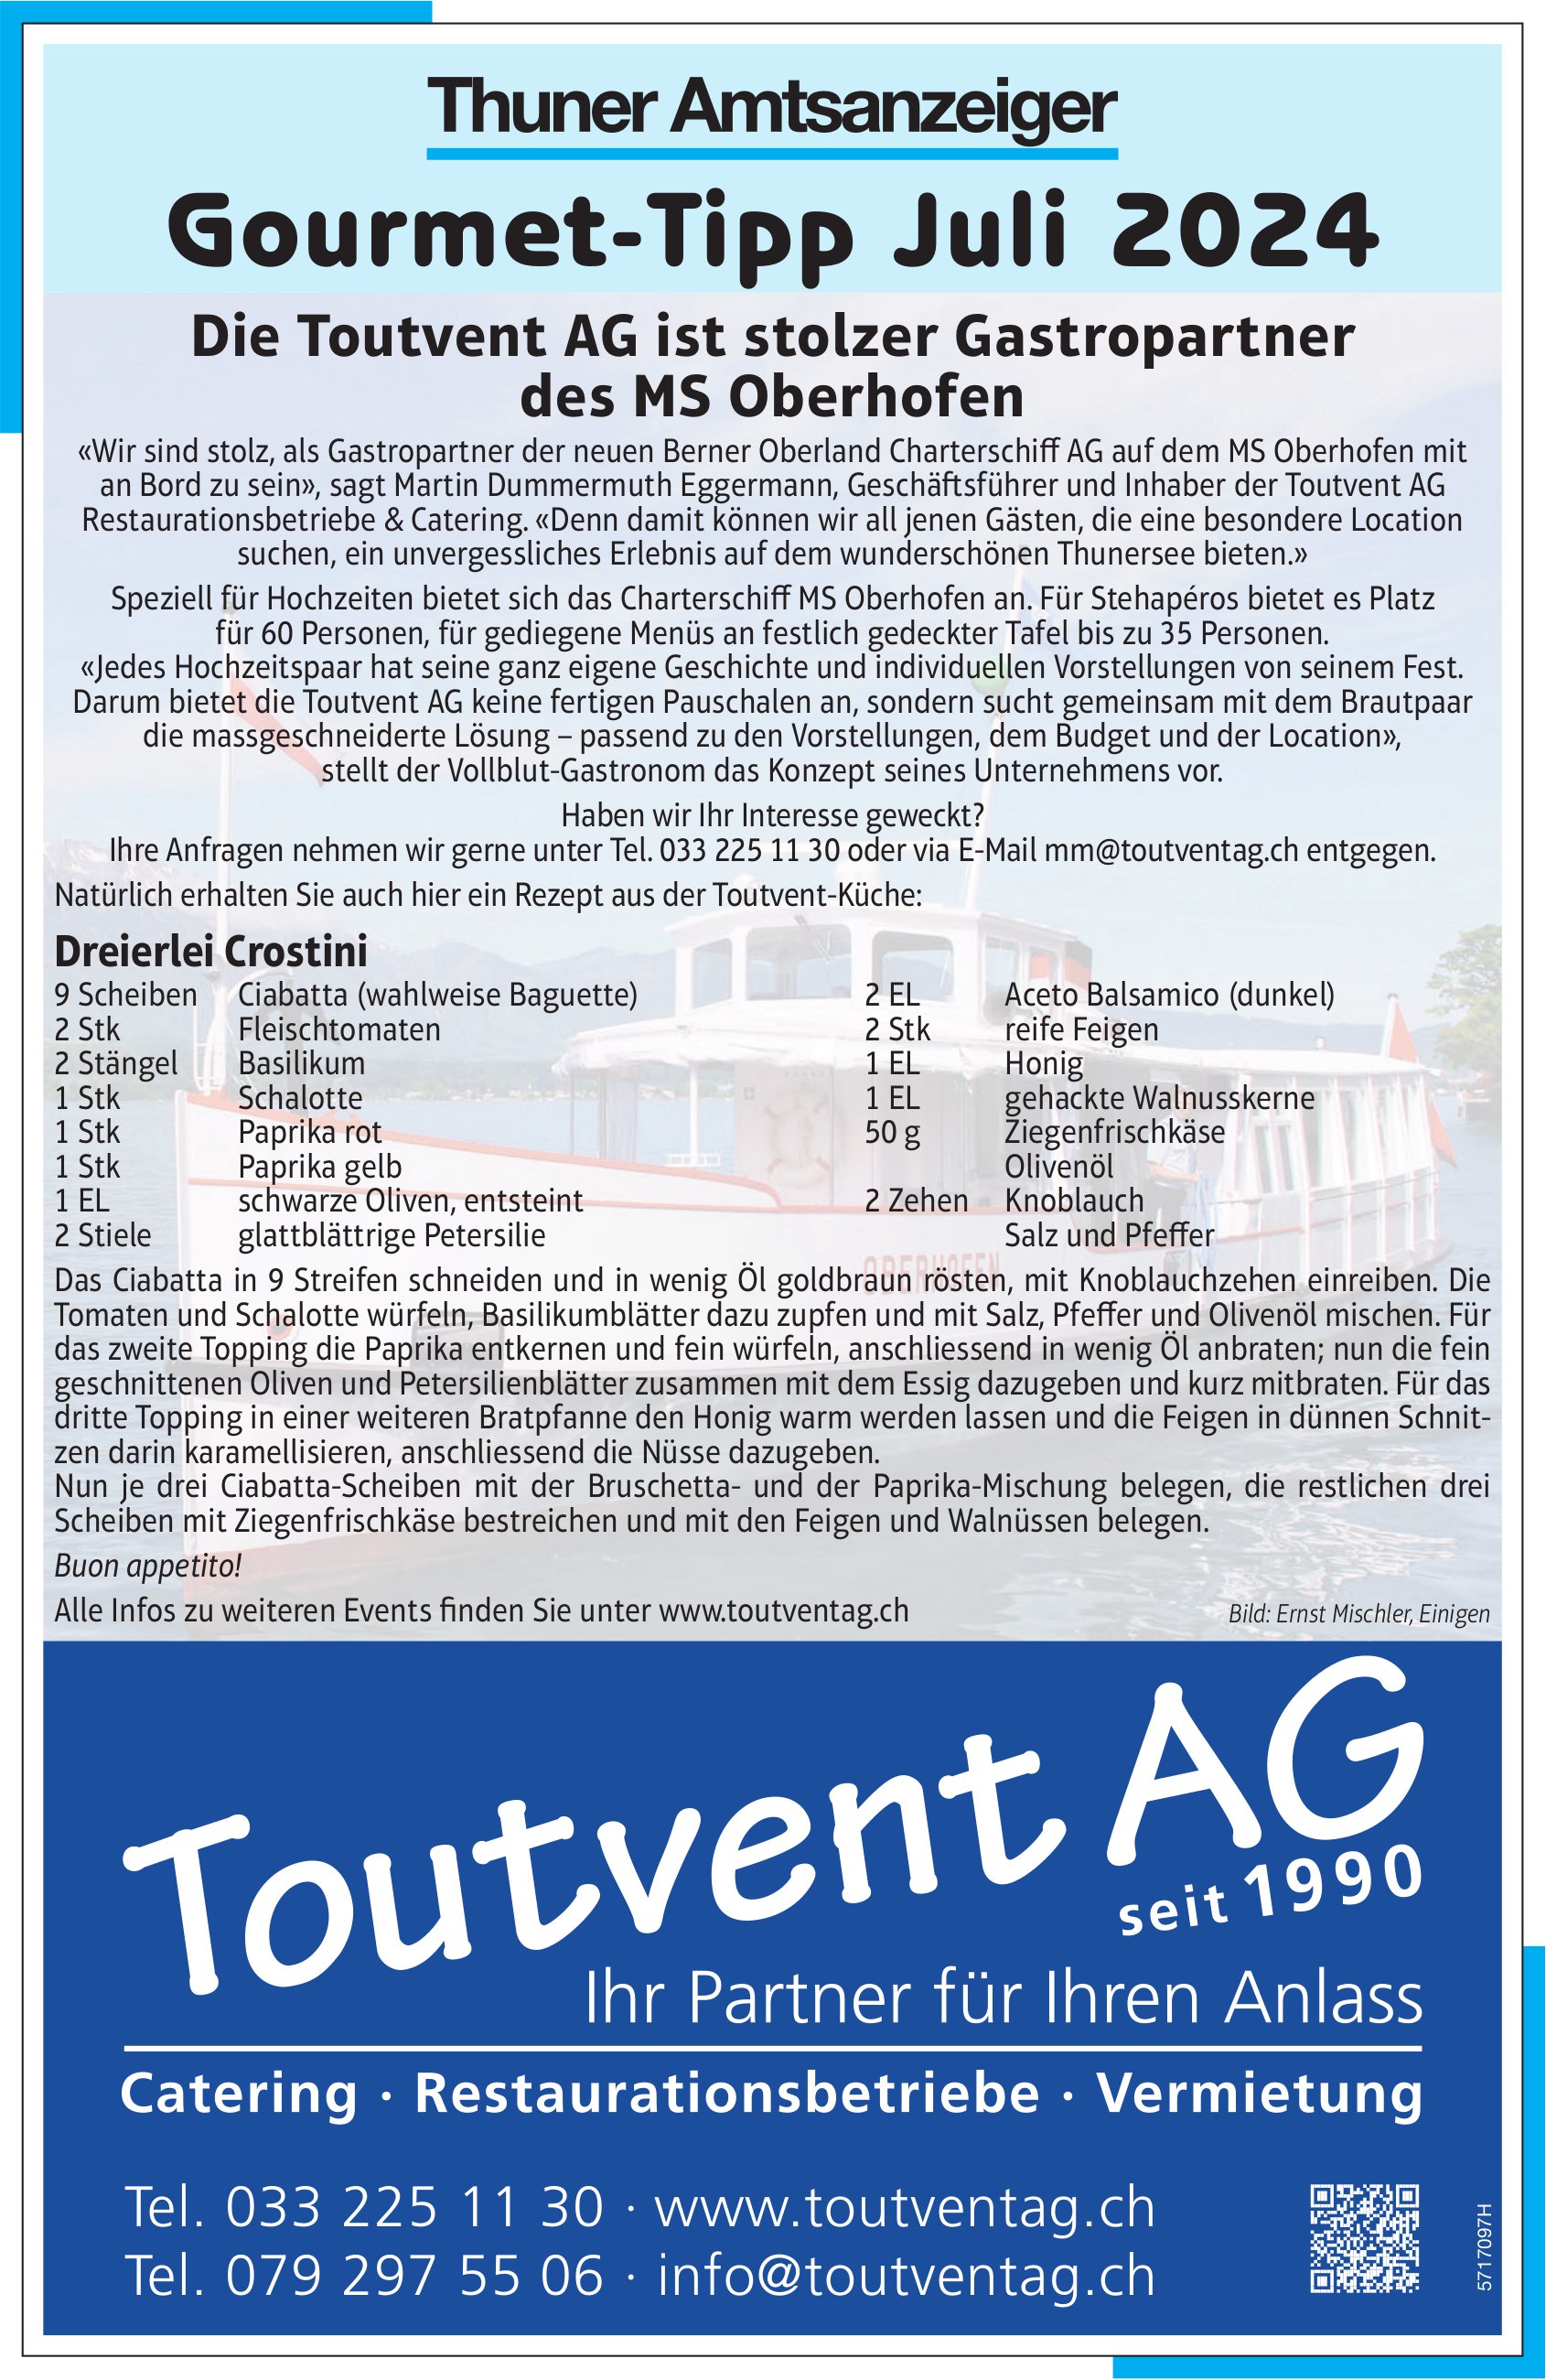 Toutvent AG - Thuner Amtsanzeiger, Gourmet-Tipp Juli 2024